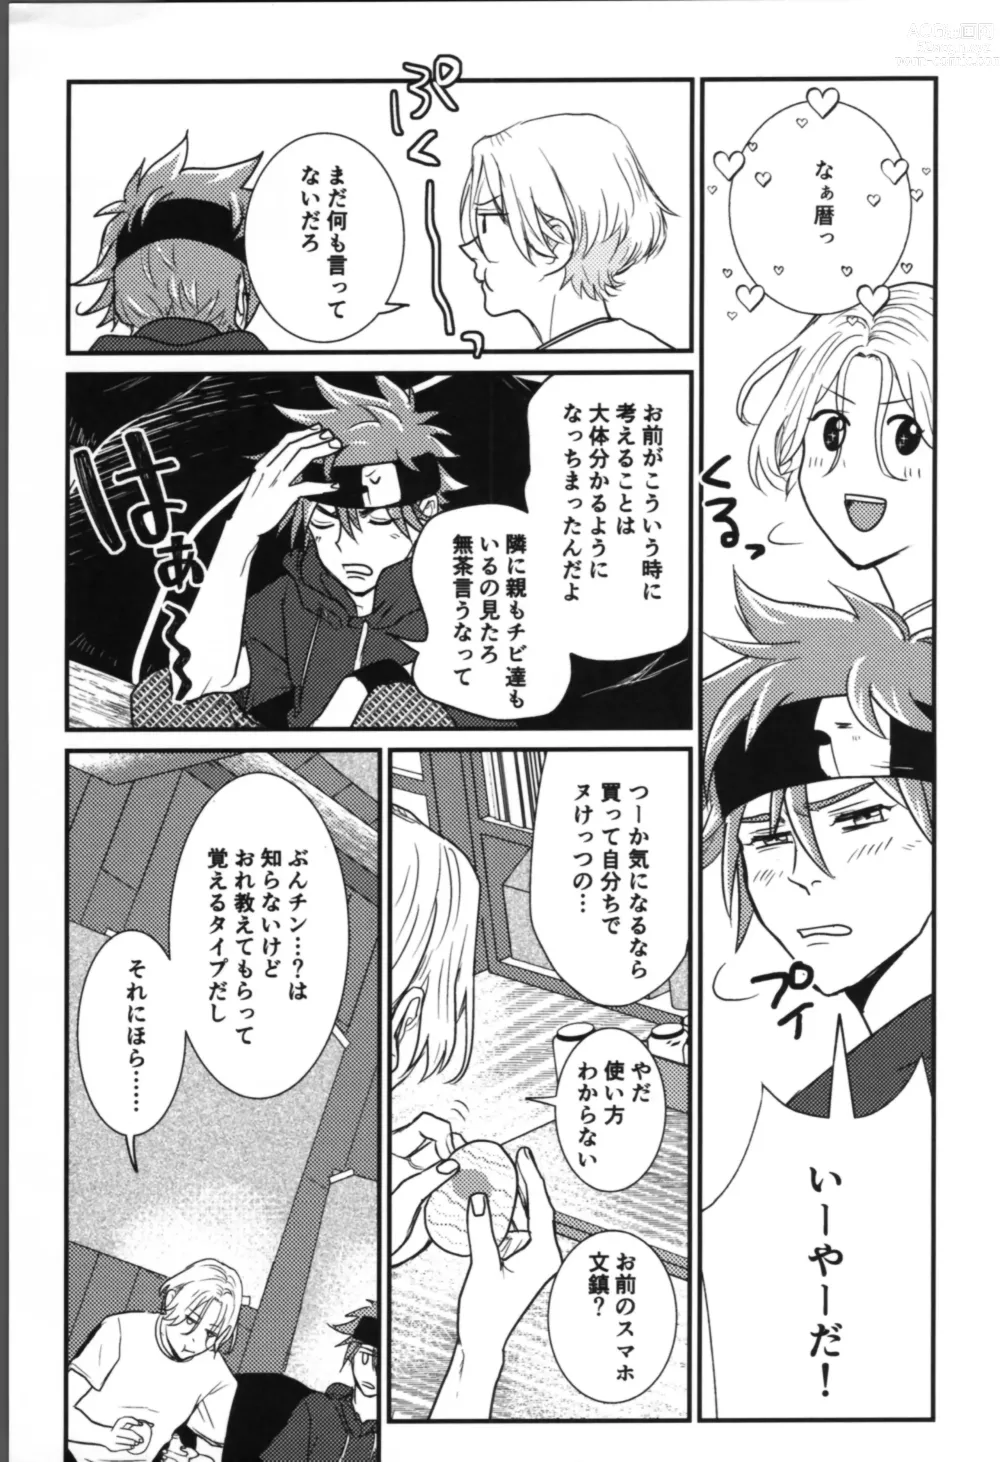 Page 9 of doujinshi Onaji ana no kijimuna